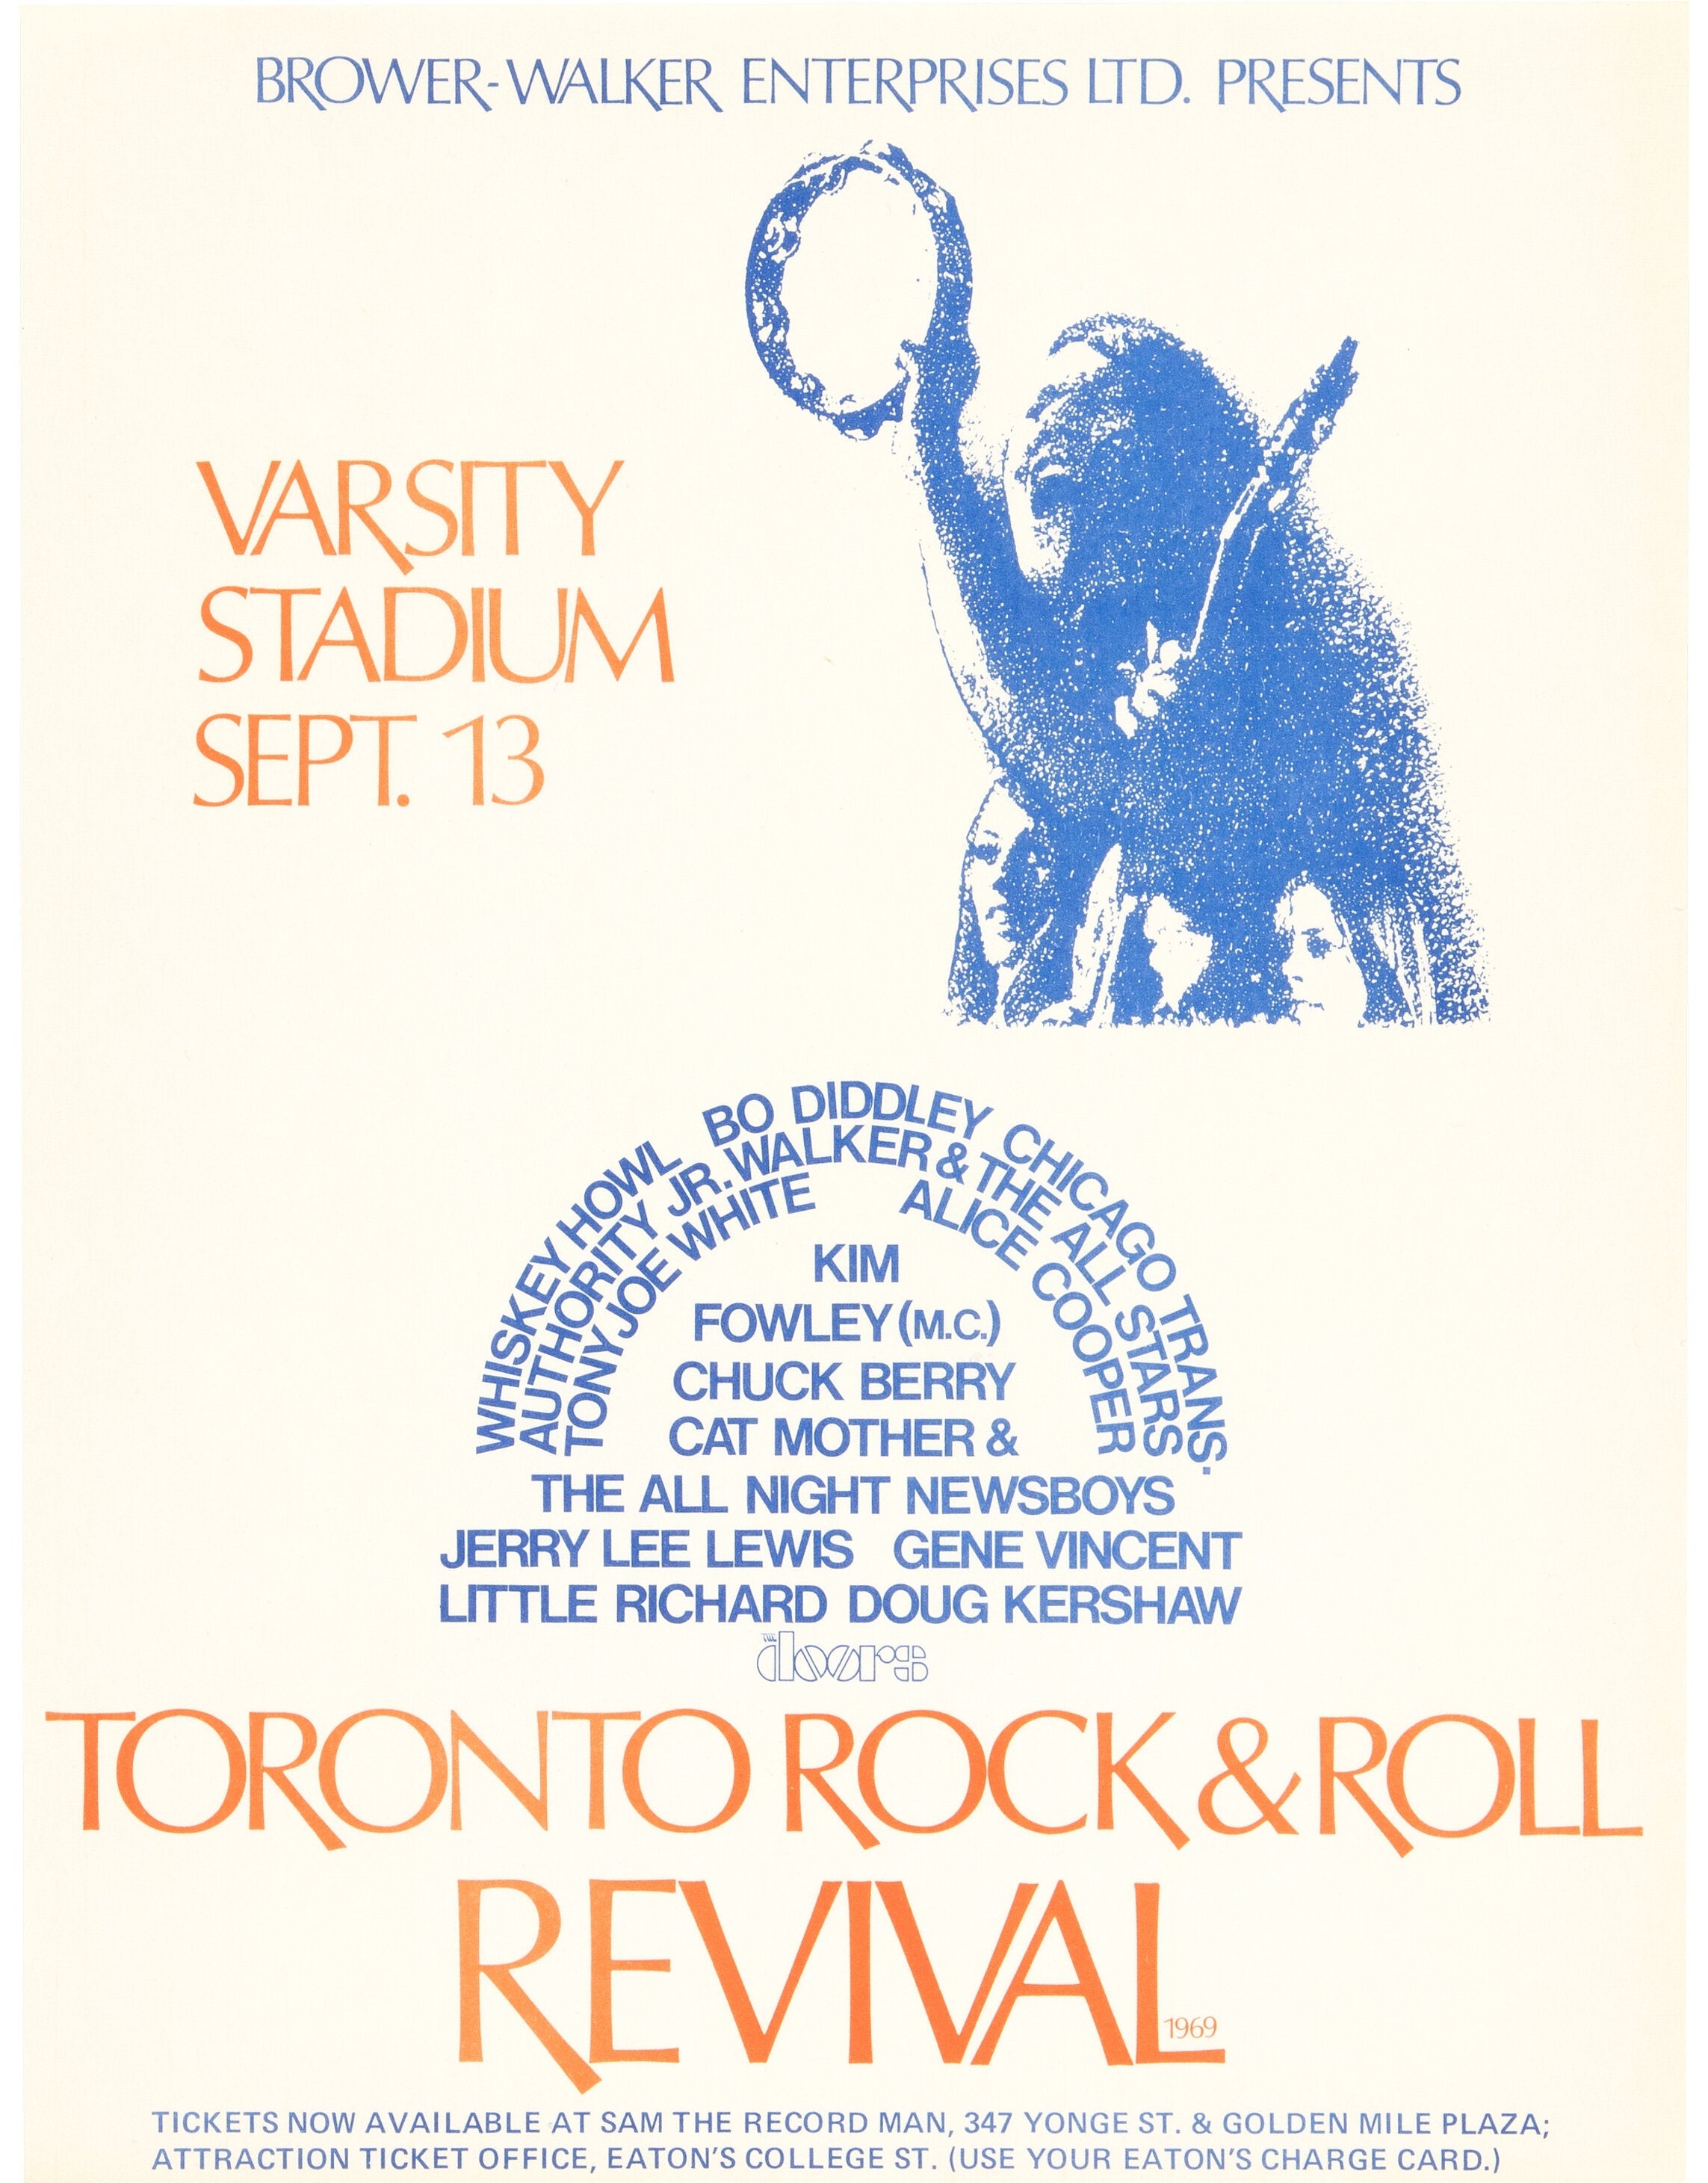 Toronto Rock n Roll Revival 1969